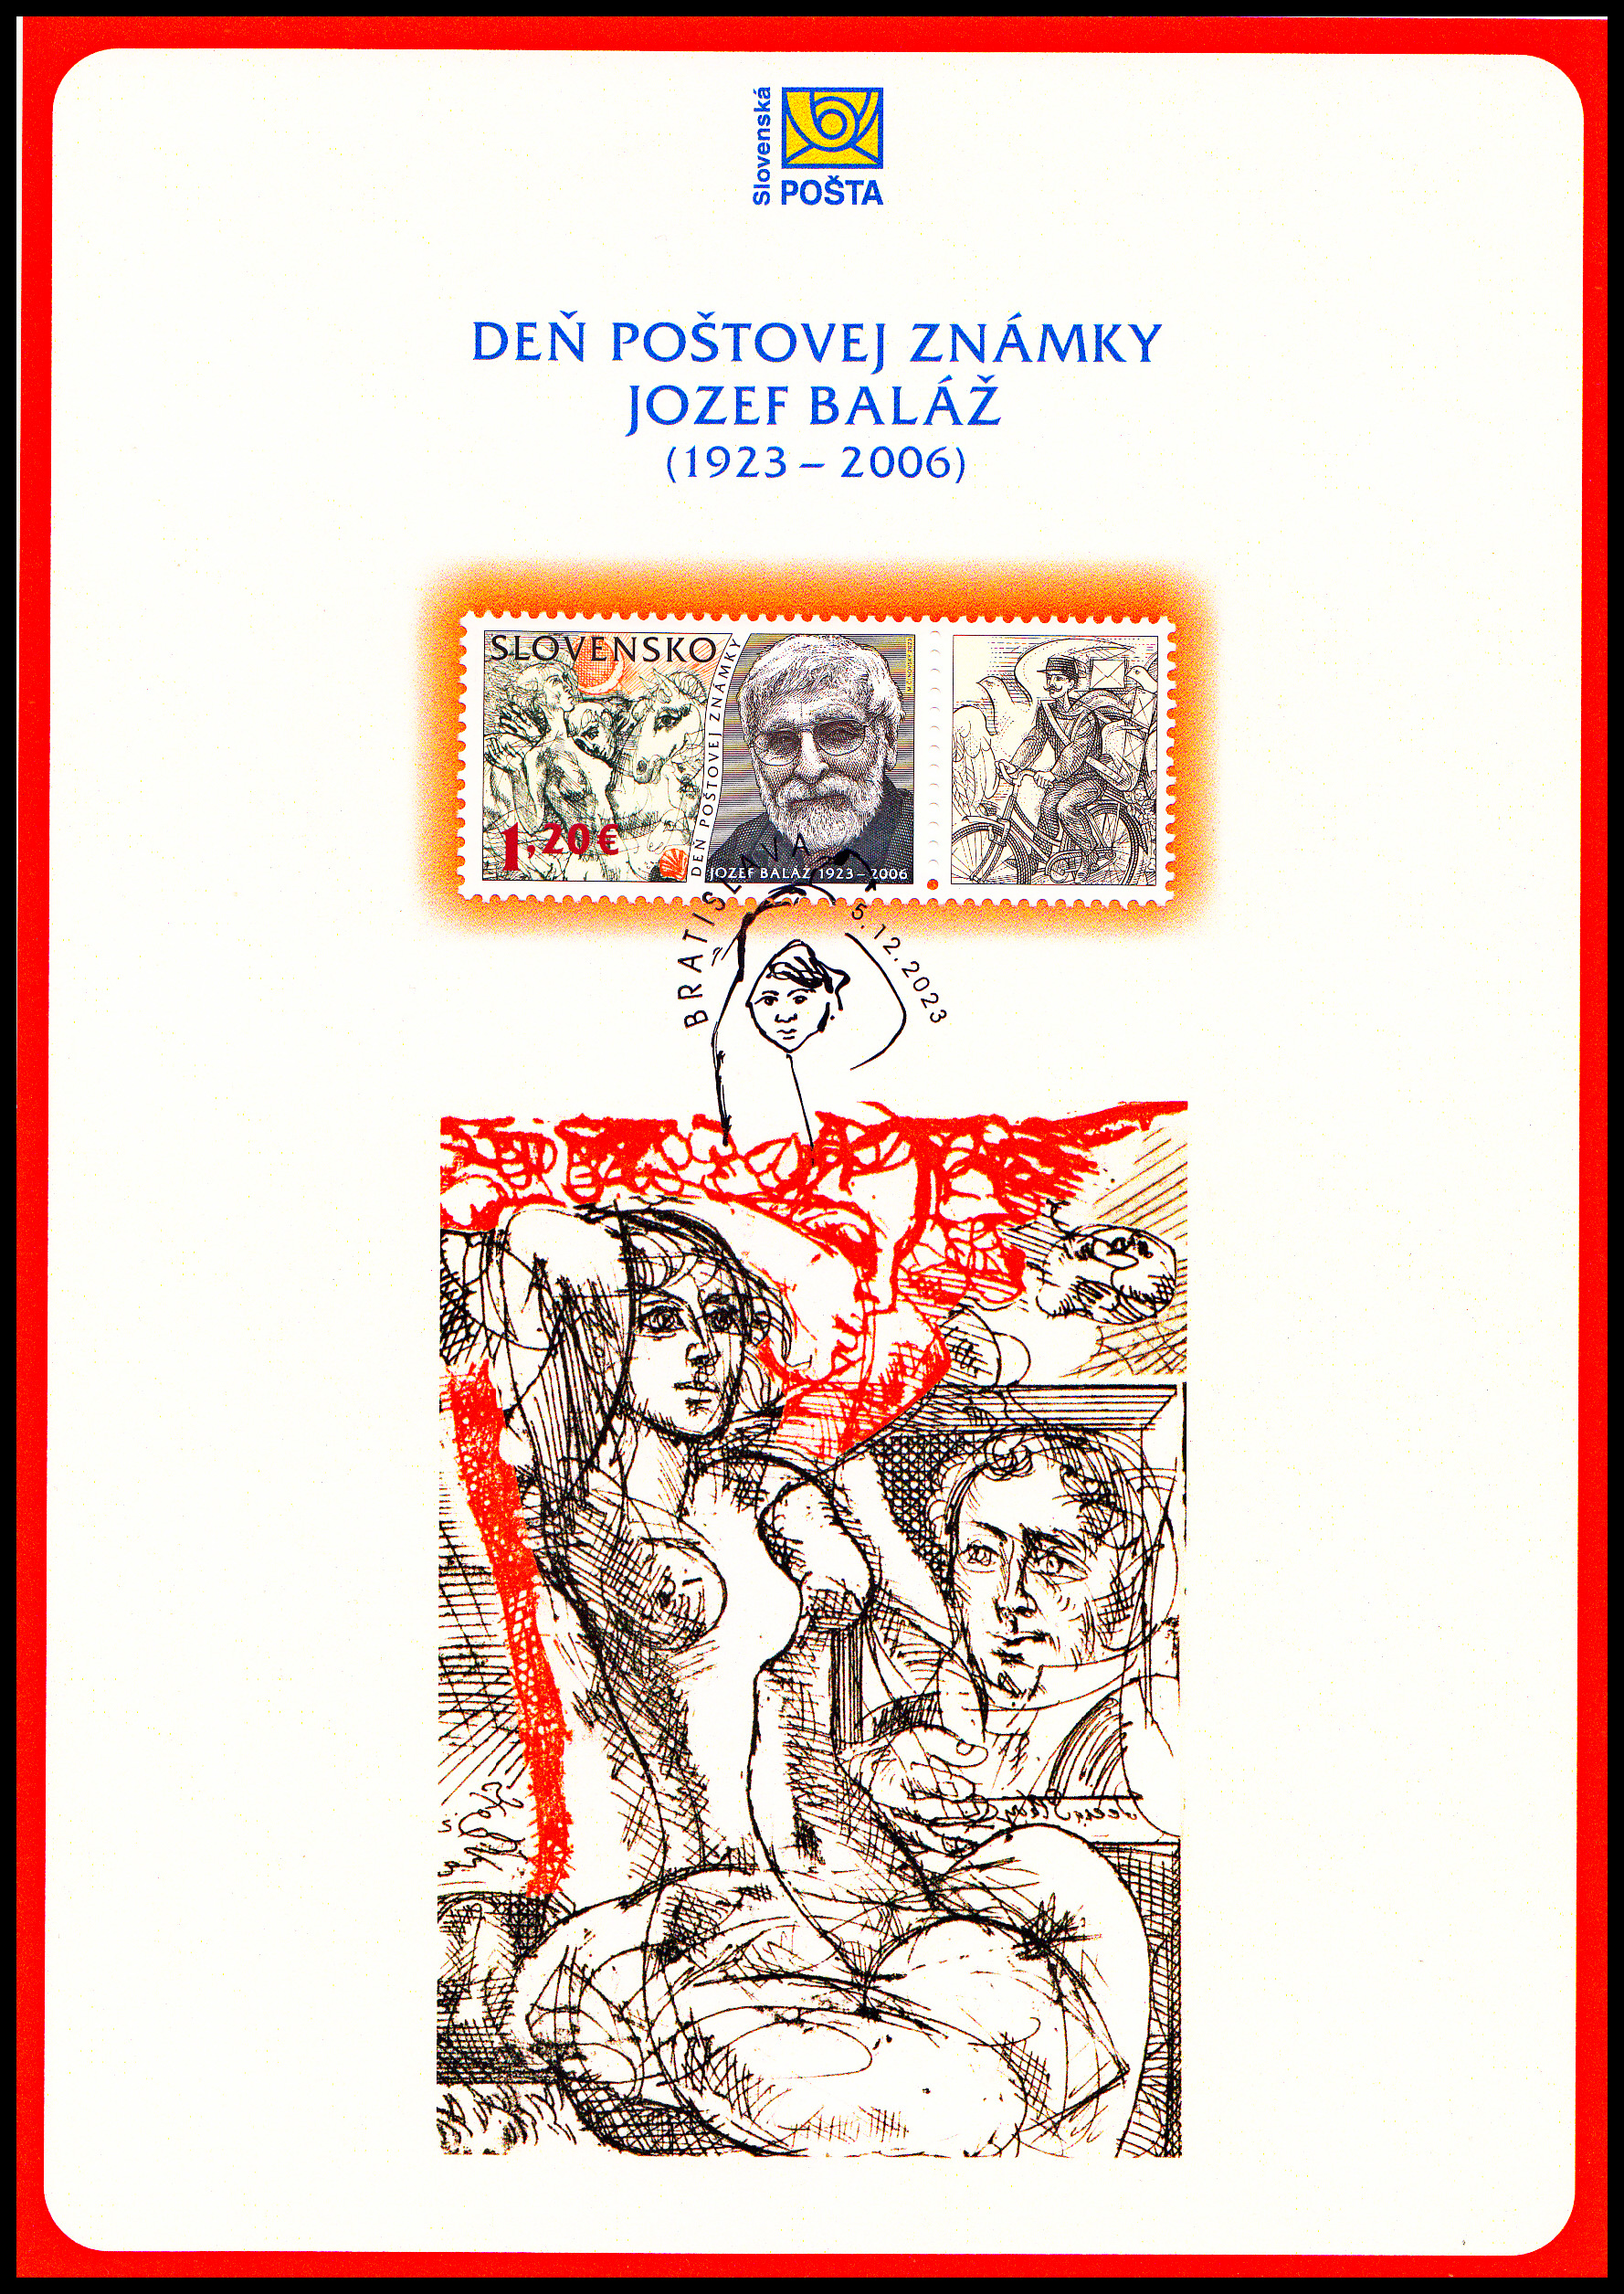 NL - Den poštovní známky 2023 - Jozef Baláž (1923 – 2006) 